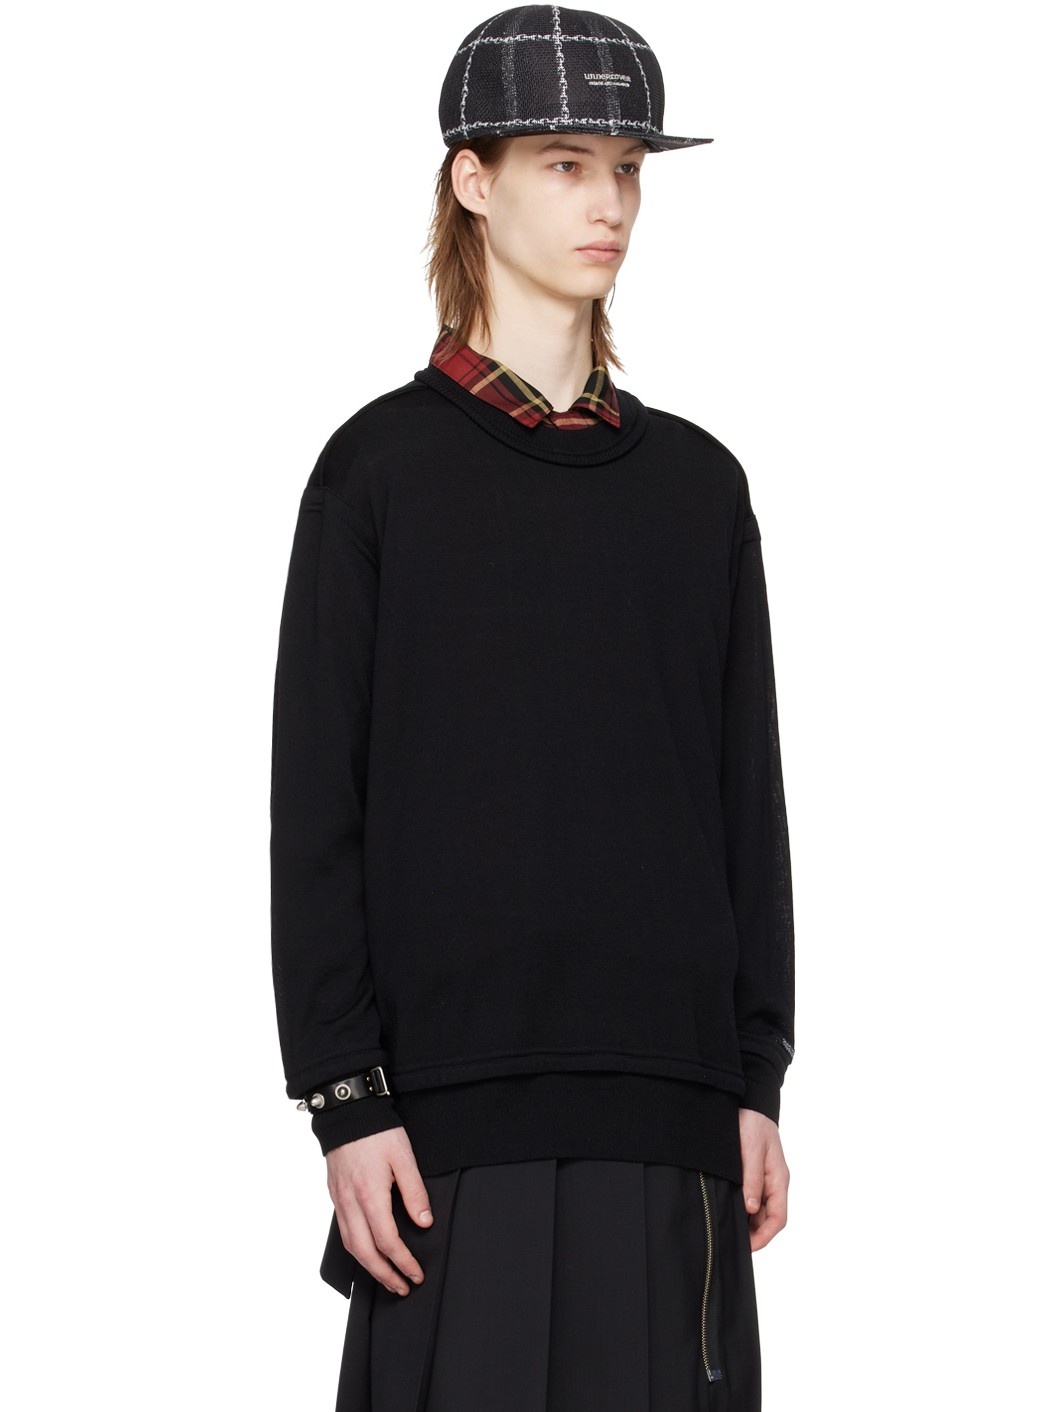 Black Exposed Seam Sweater - 2